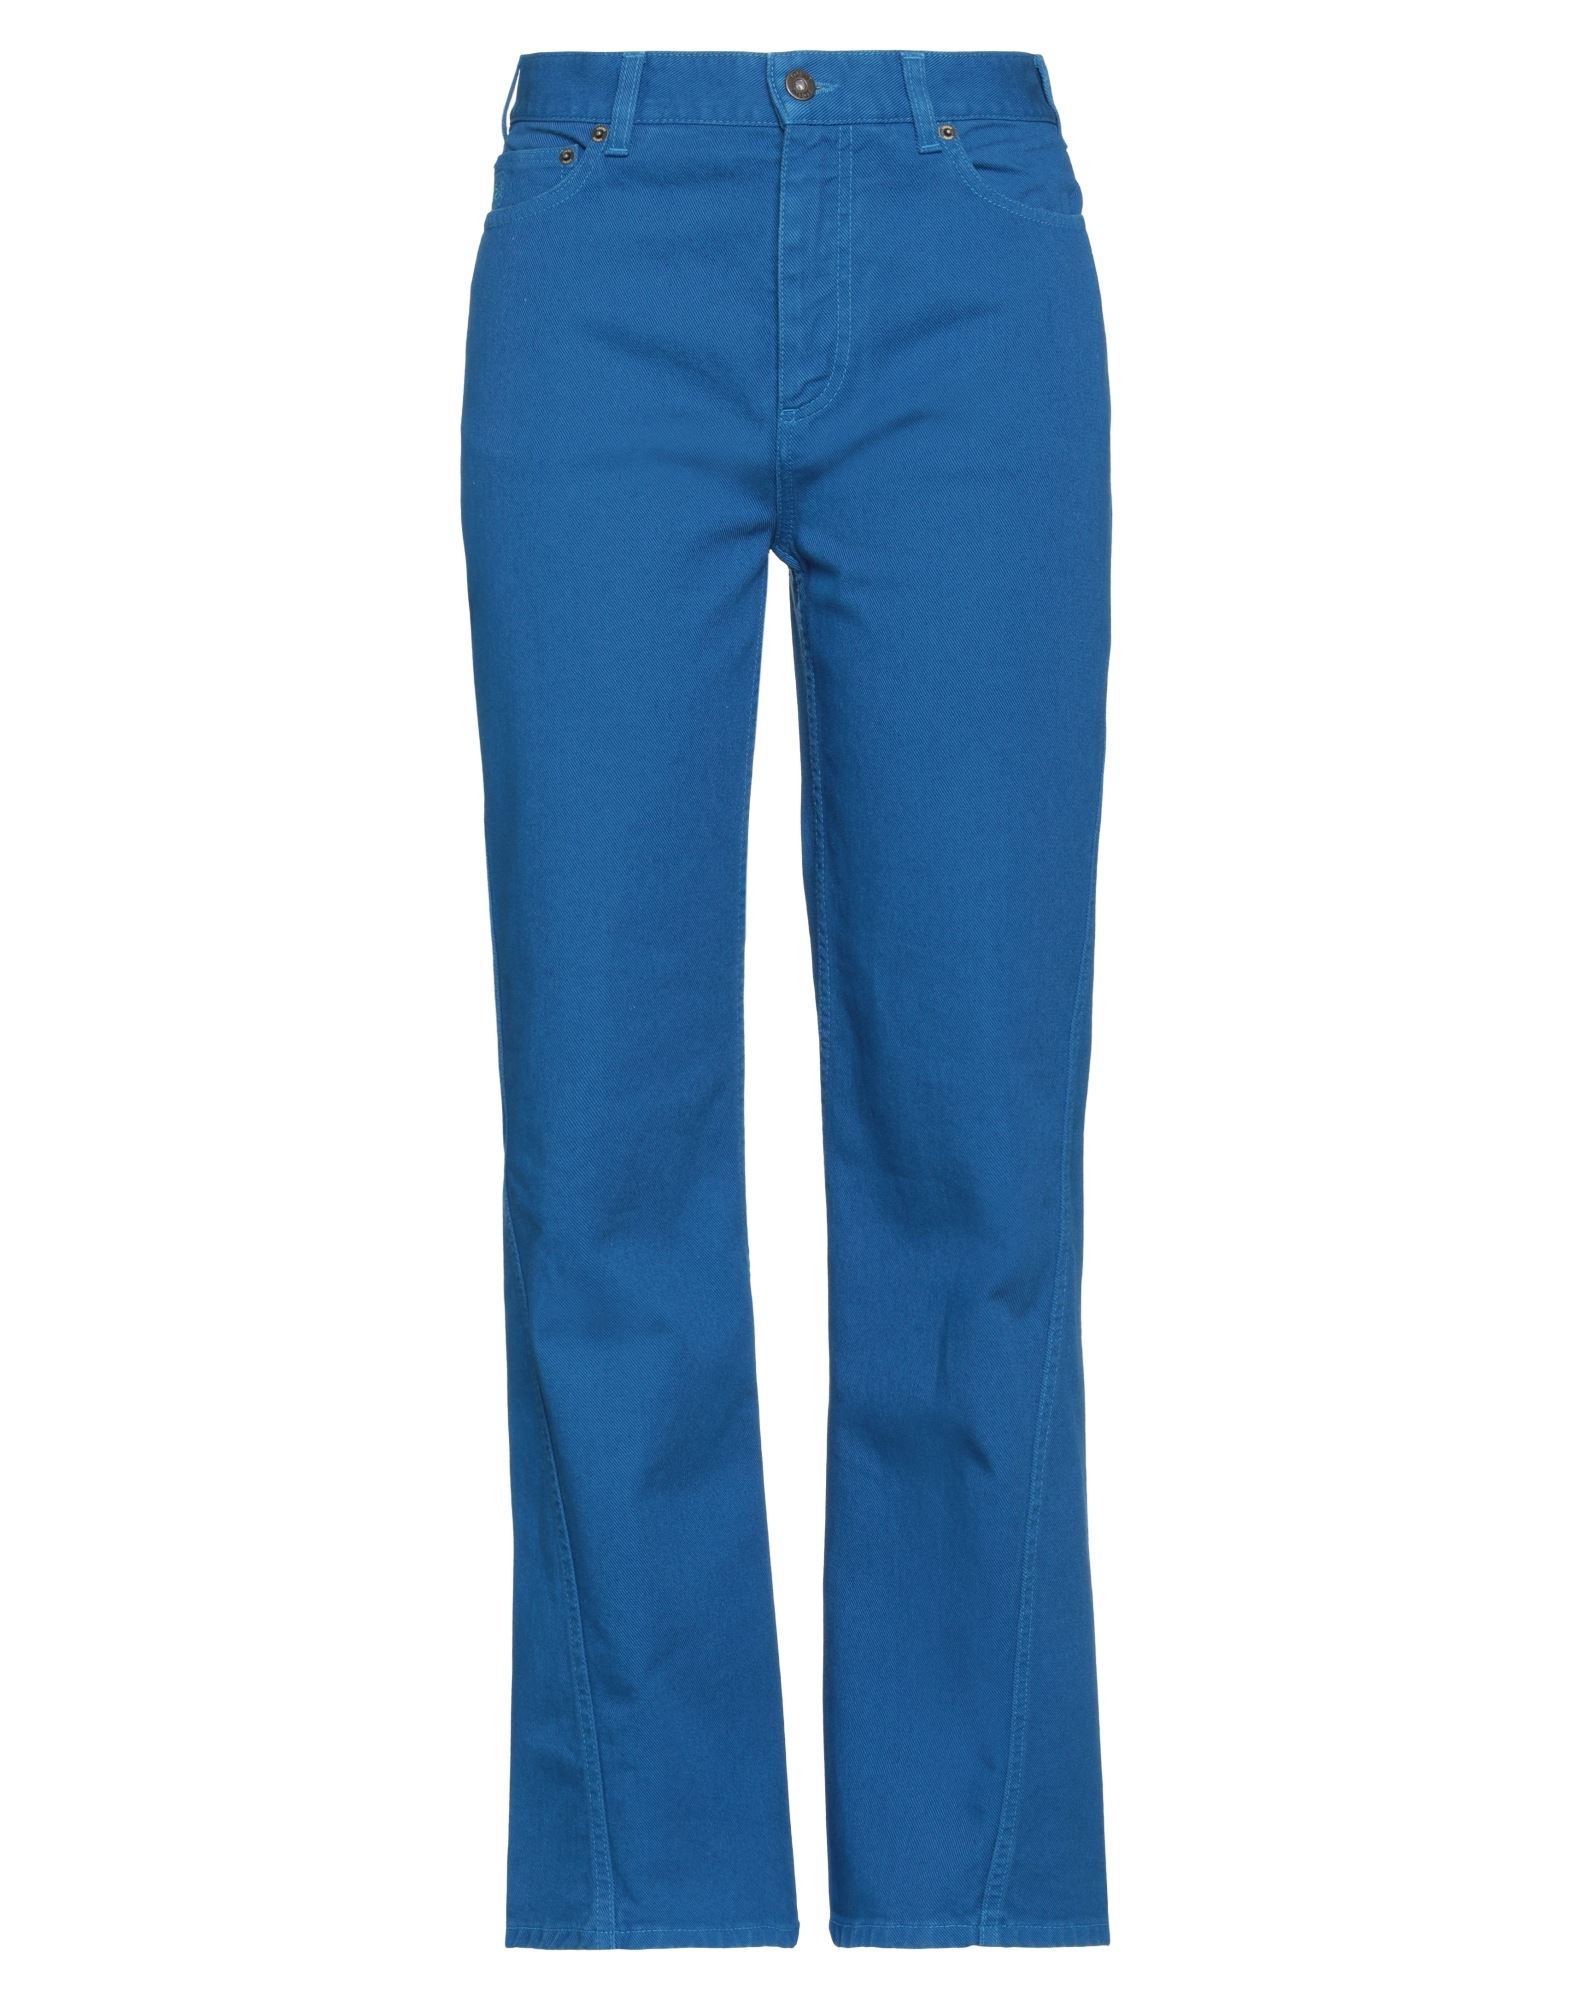 Loewe Jeans In Bright Blue